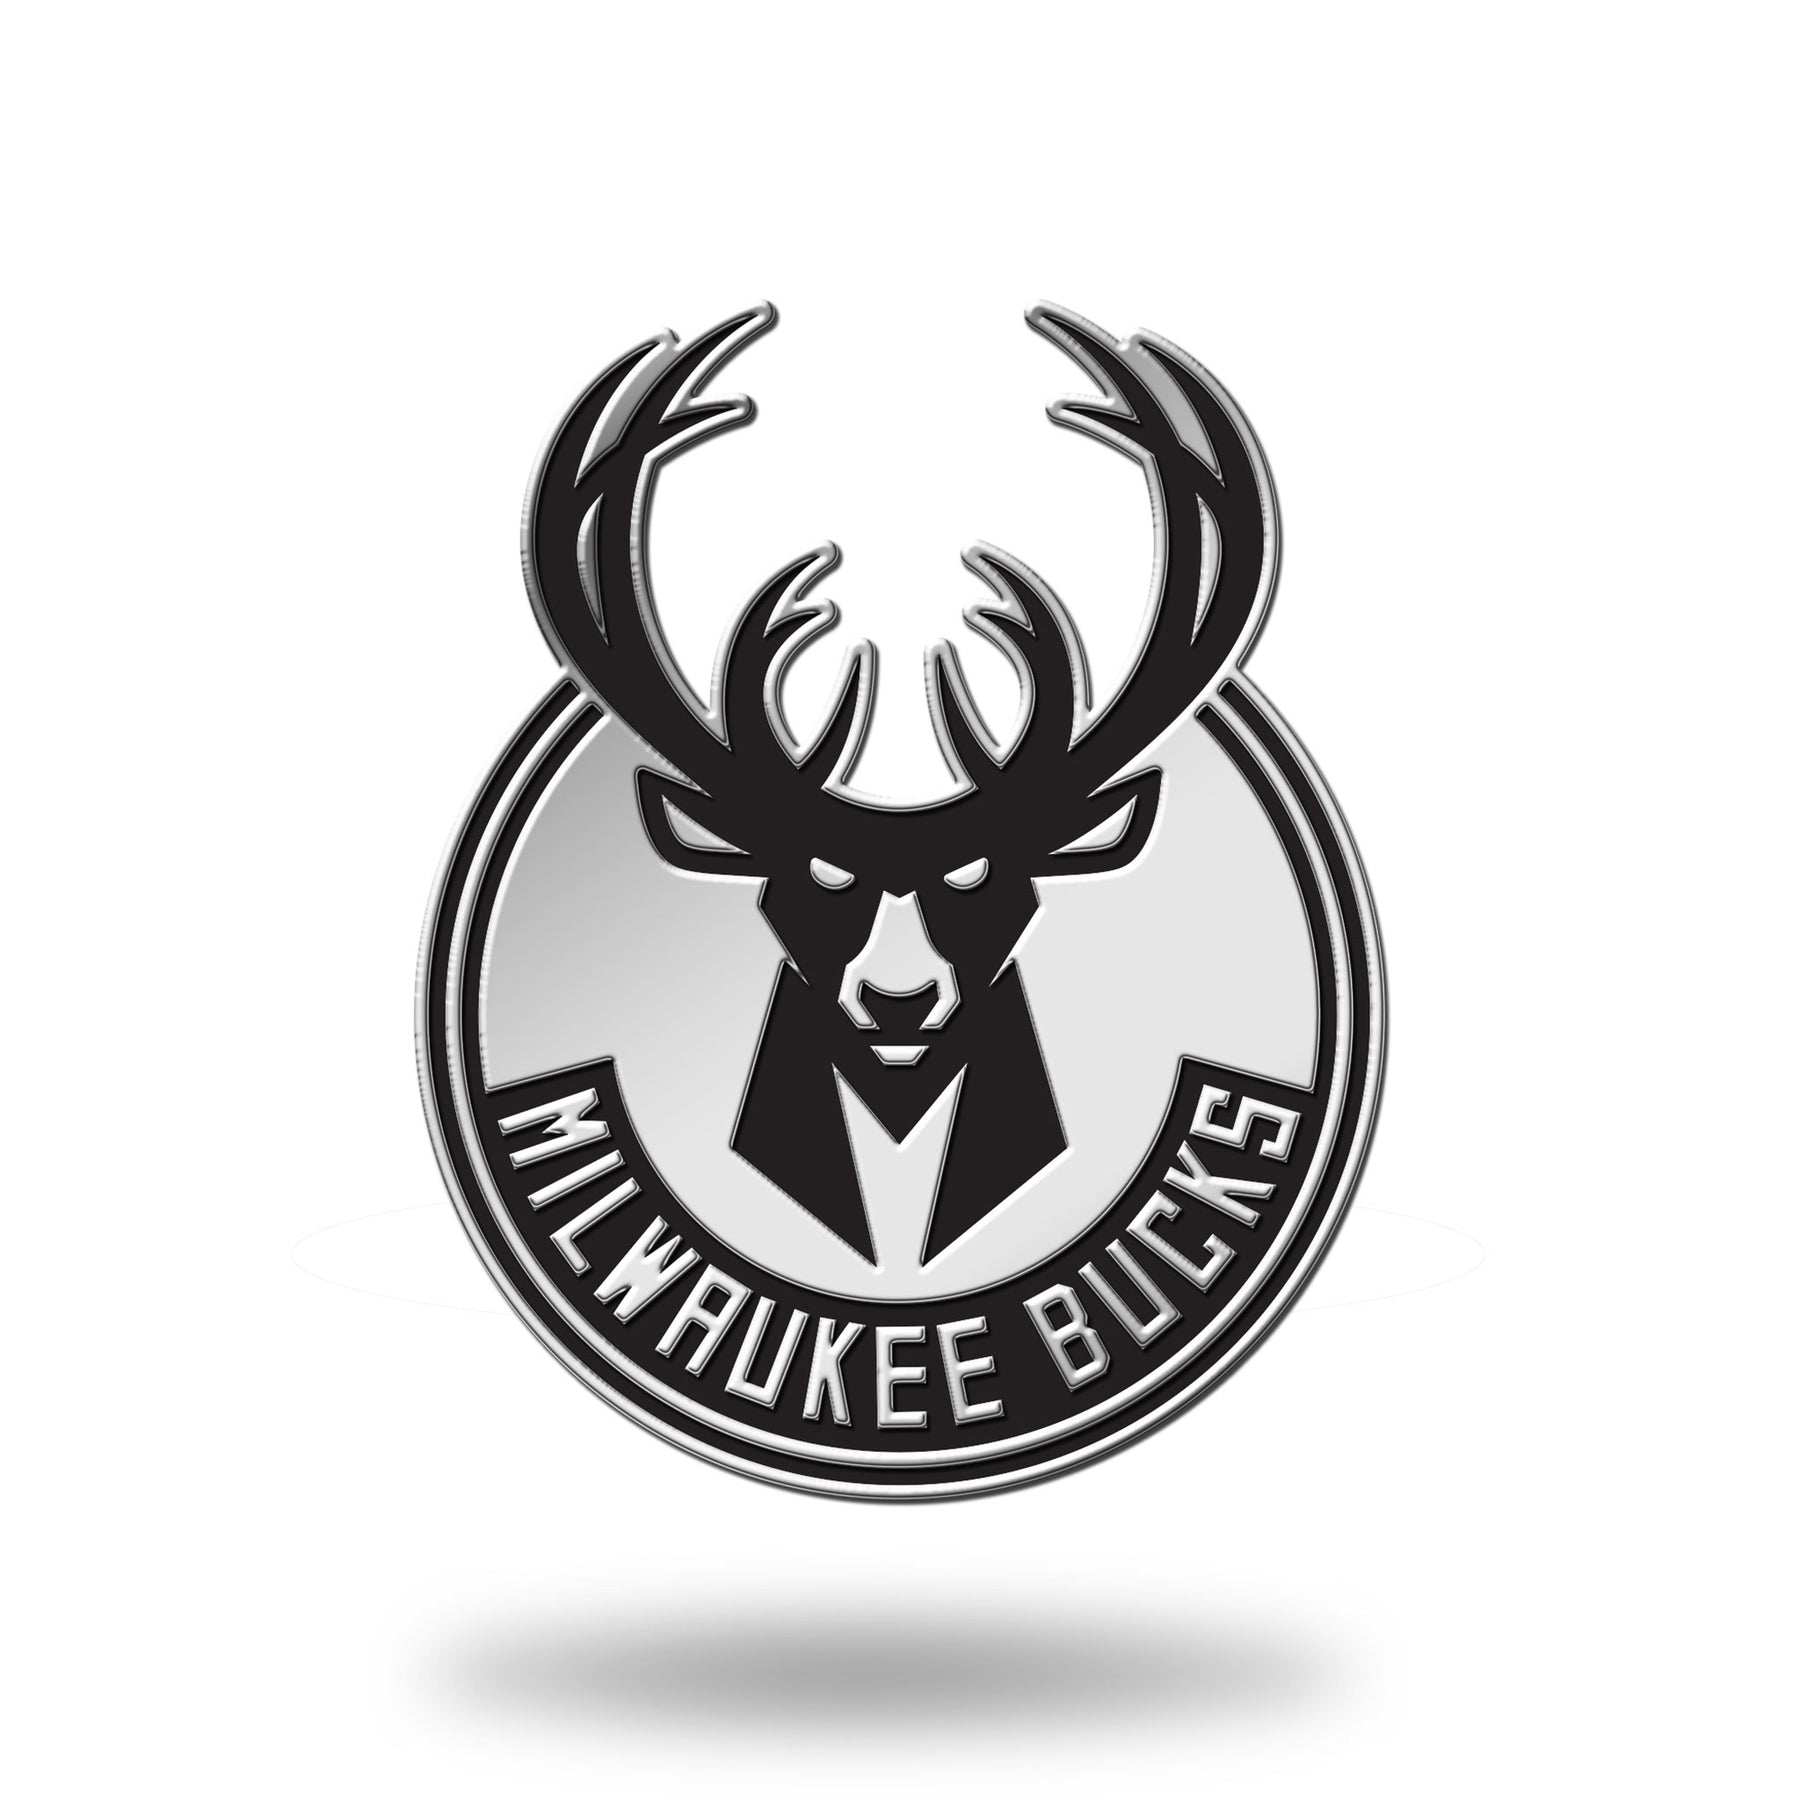 Milwaukee Bucks Molded Chrome Car Emblem